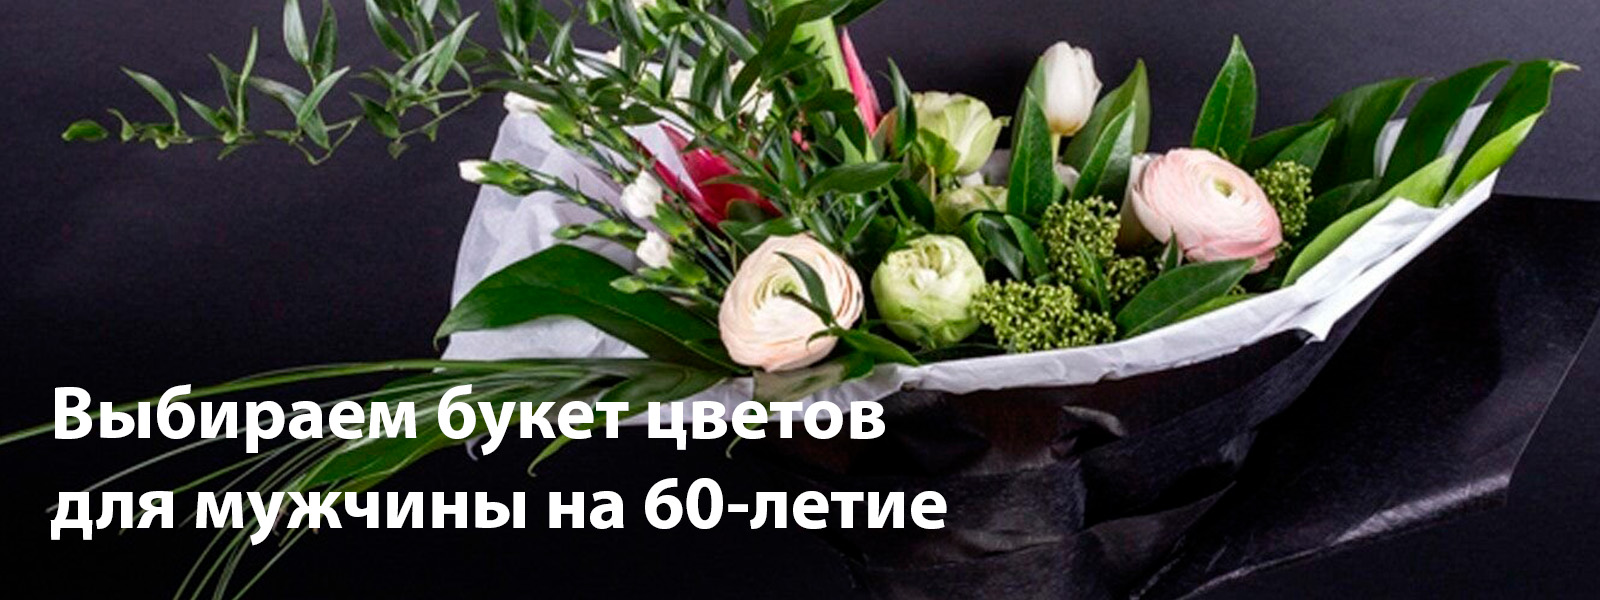 Выбираем букет цветов для мужчины на 60-летие